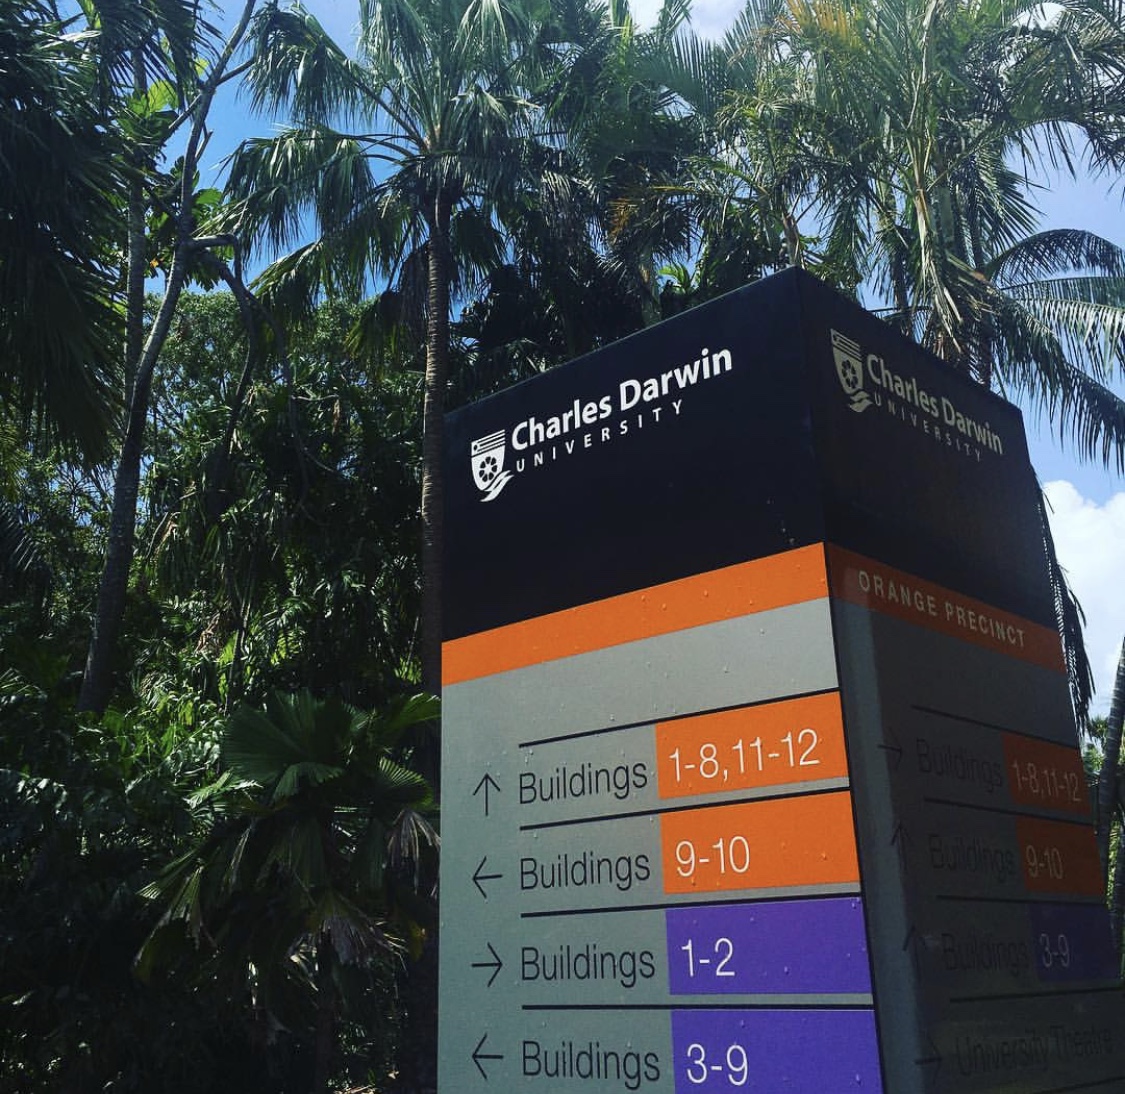 جامعة تشارلز داروين – Charles Darwin University